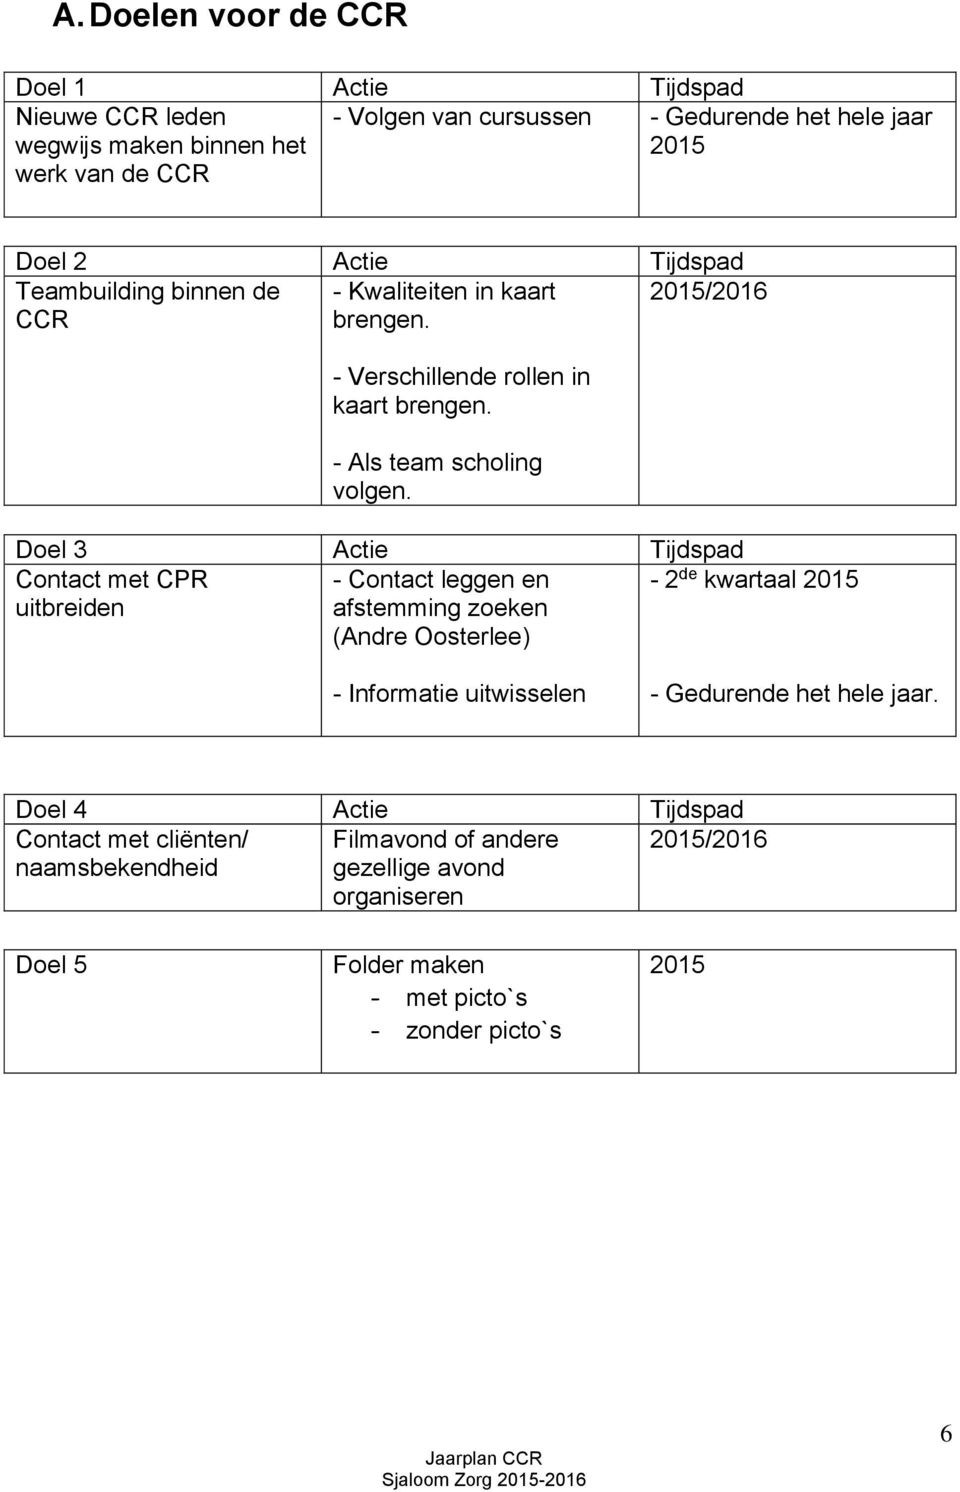 Doel 3 Actie Tijdspad Contact met CPR uitbreiden - Contact leggen en afstemming zoeken (Andre Oosterlee) - 2 de kwartaal 2015 - Informatie uitwisselen - Gedurende het